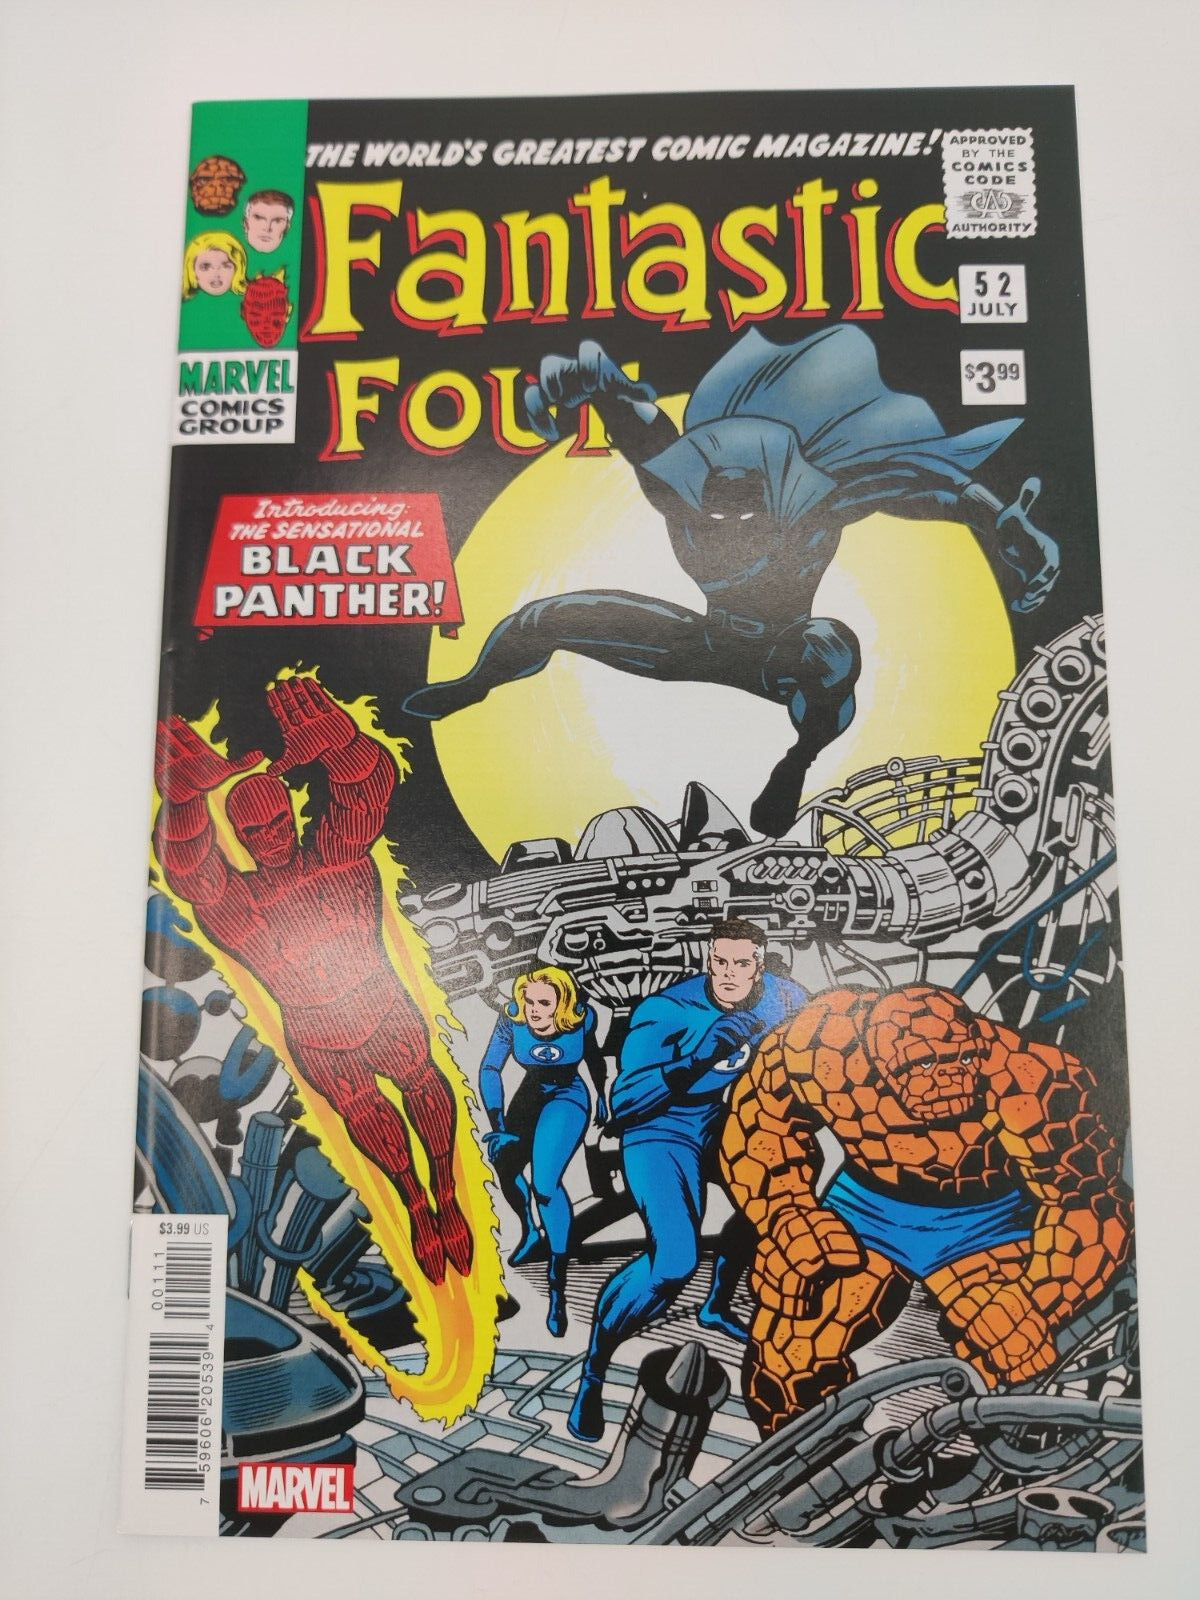 Fantastic Four #52 Facsimile Edition Marvel Comics